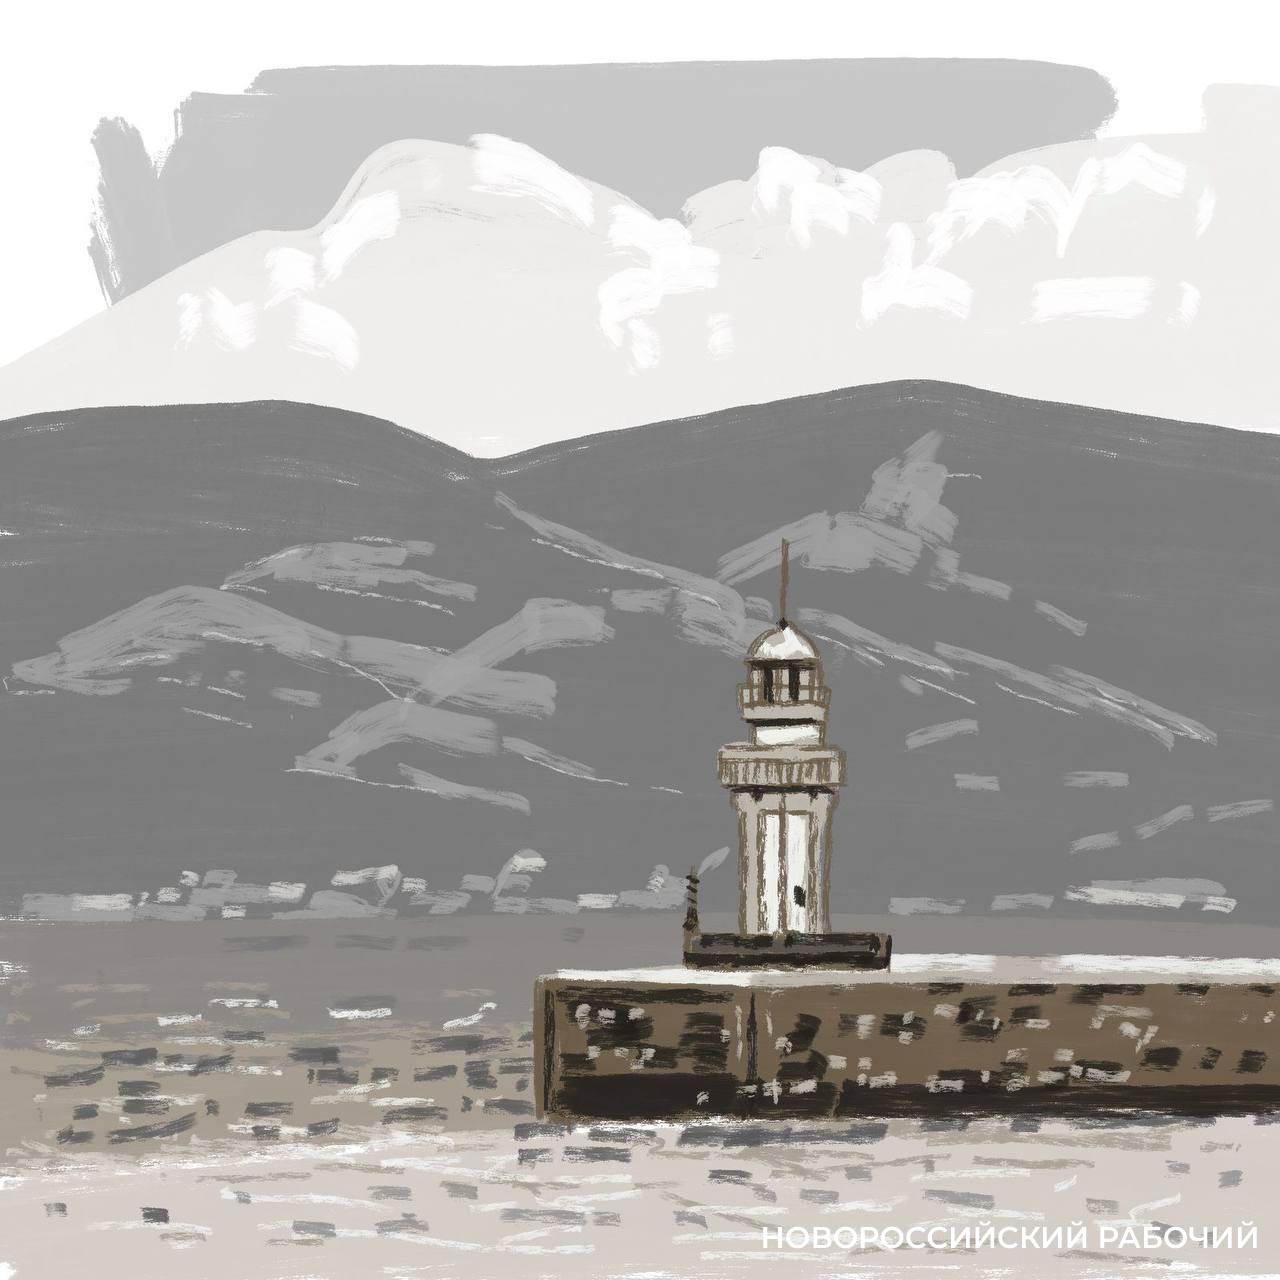 В старой арке Новороссийска нарисуют маяк, башню, причал и еще что-то красивое